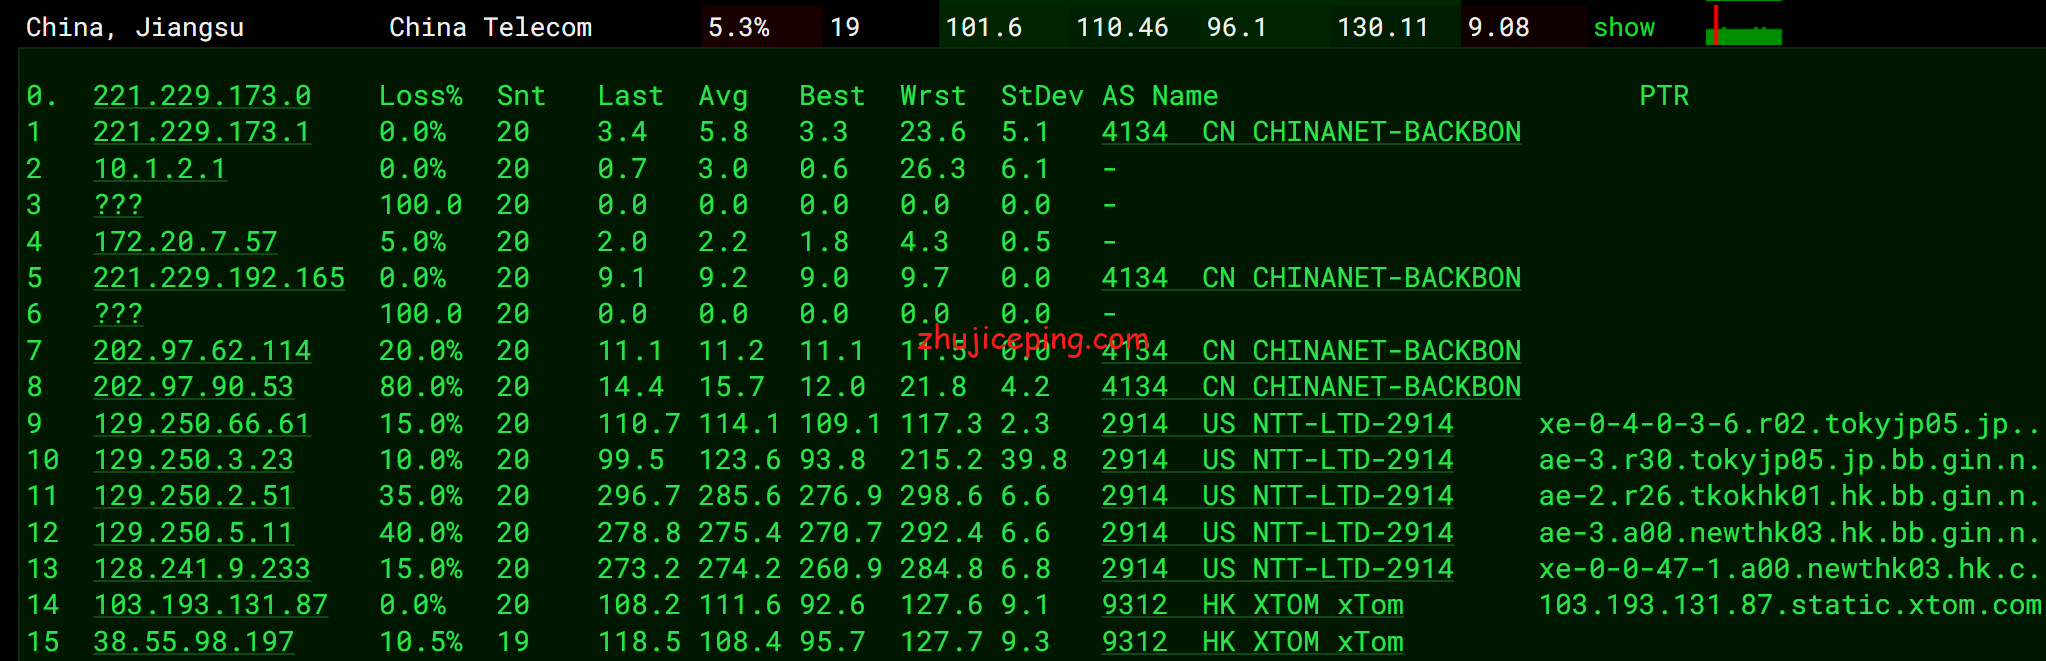 简单测评hostyun香港EQ机房移动CMI线路10Gbps带宽的VPS